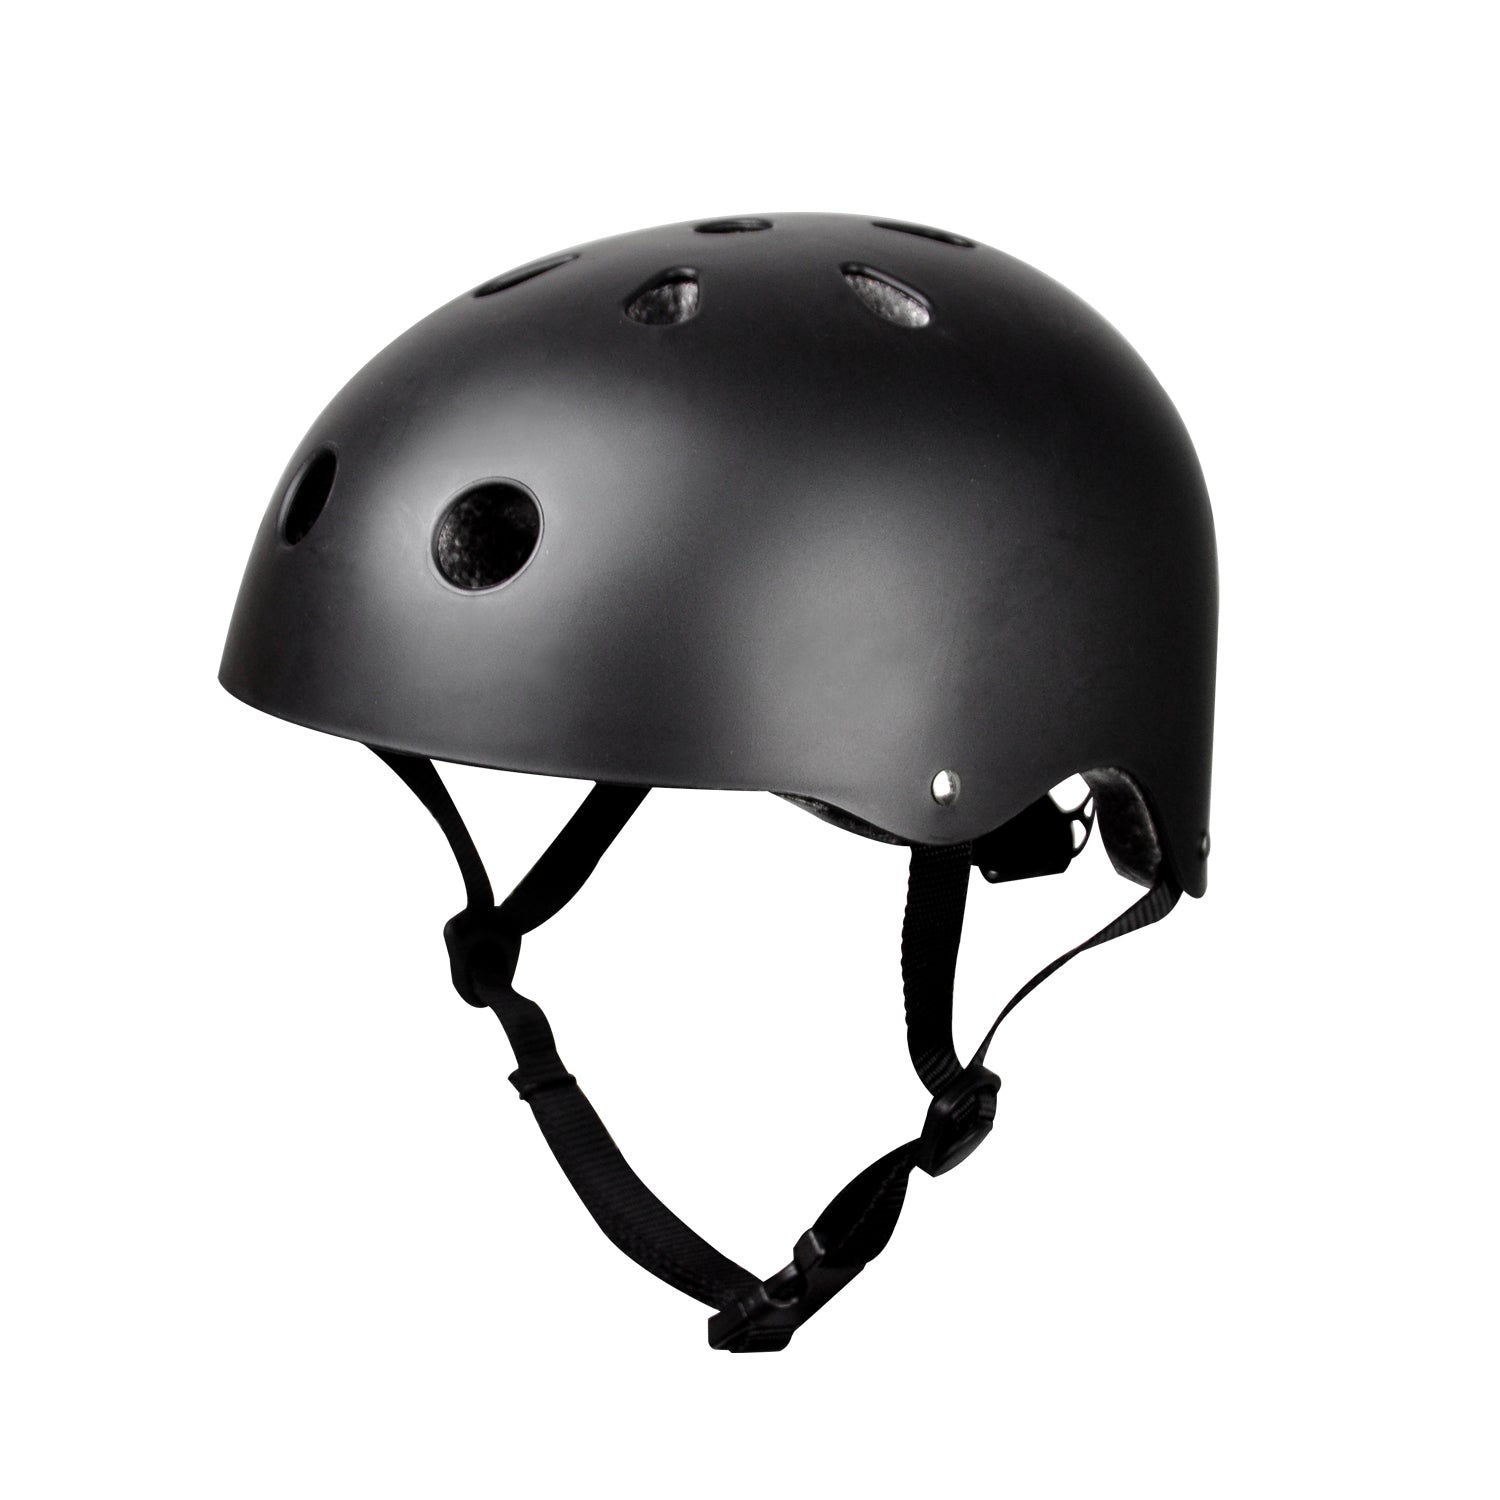 Apachie Essential Street Helmet